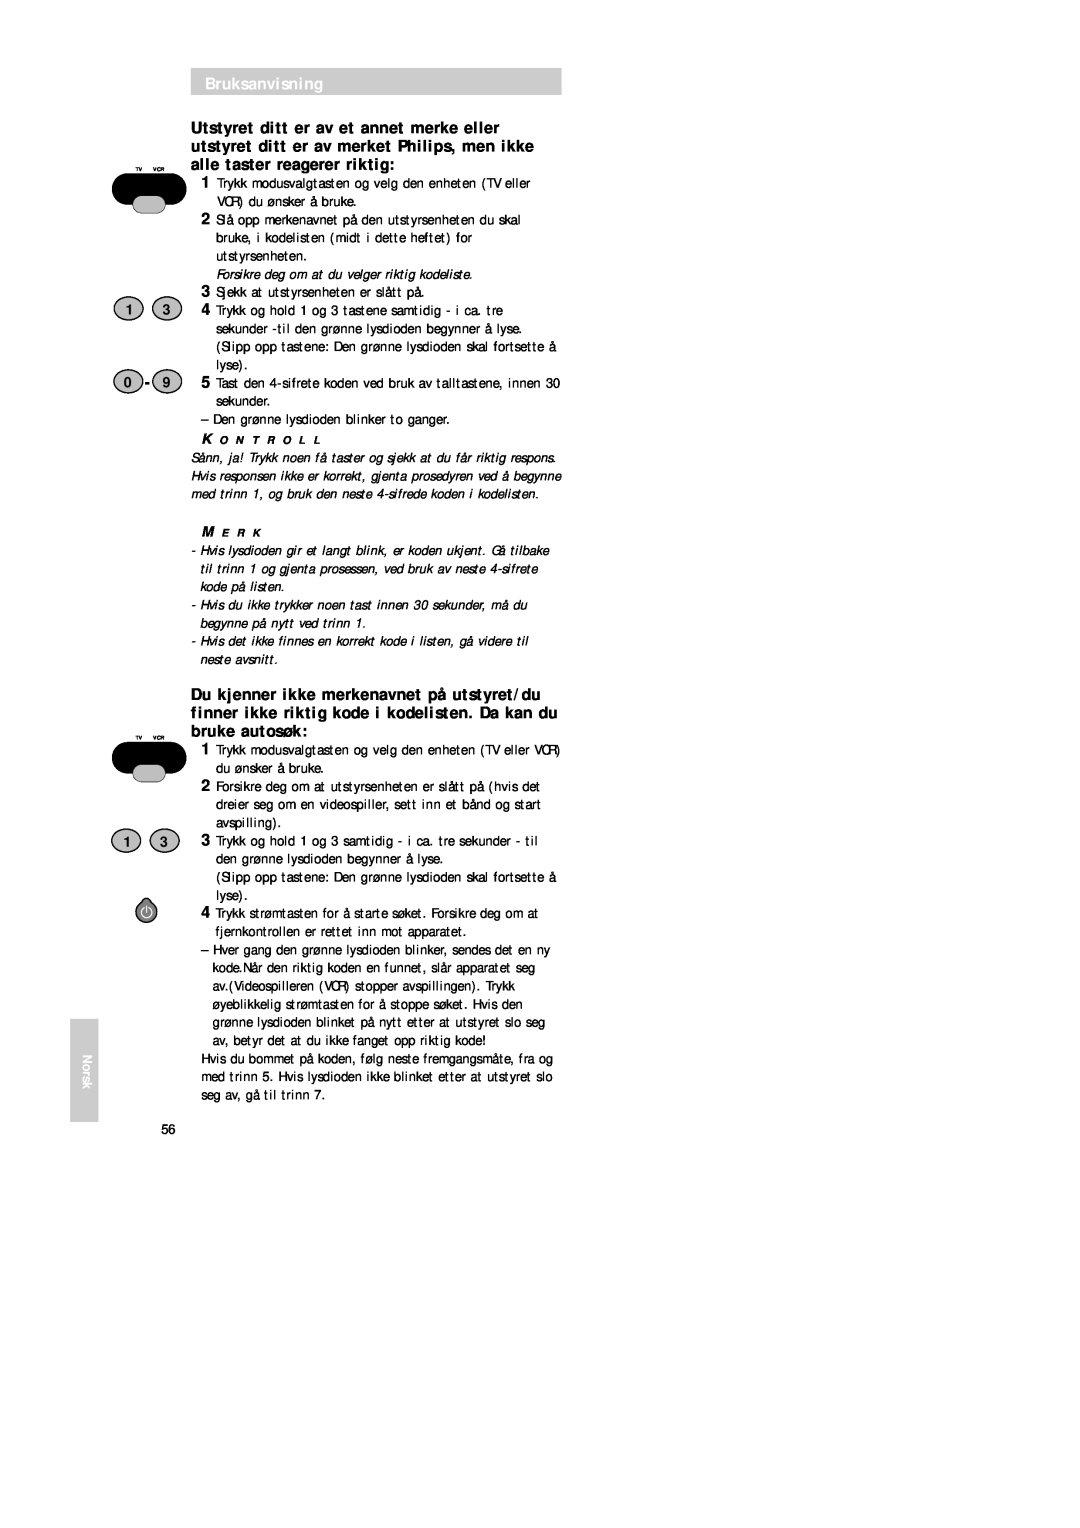 Philips SBC RU 520 manual Bruksanvisning, Forsikre deg om at du velger riktig kodeliste 